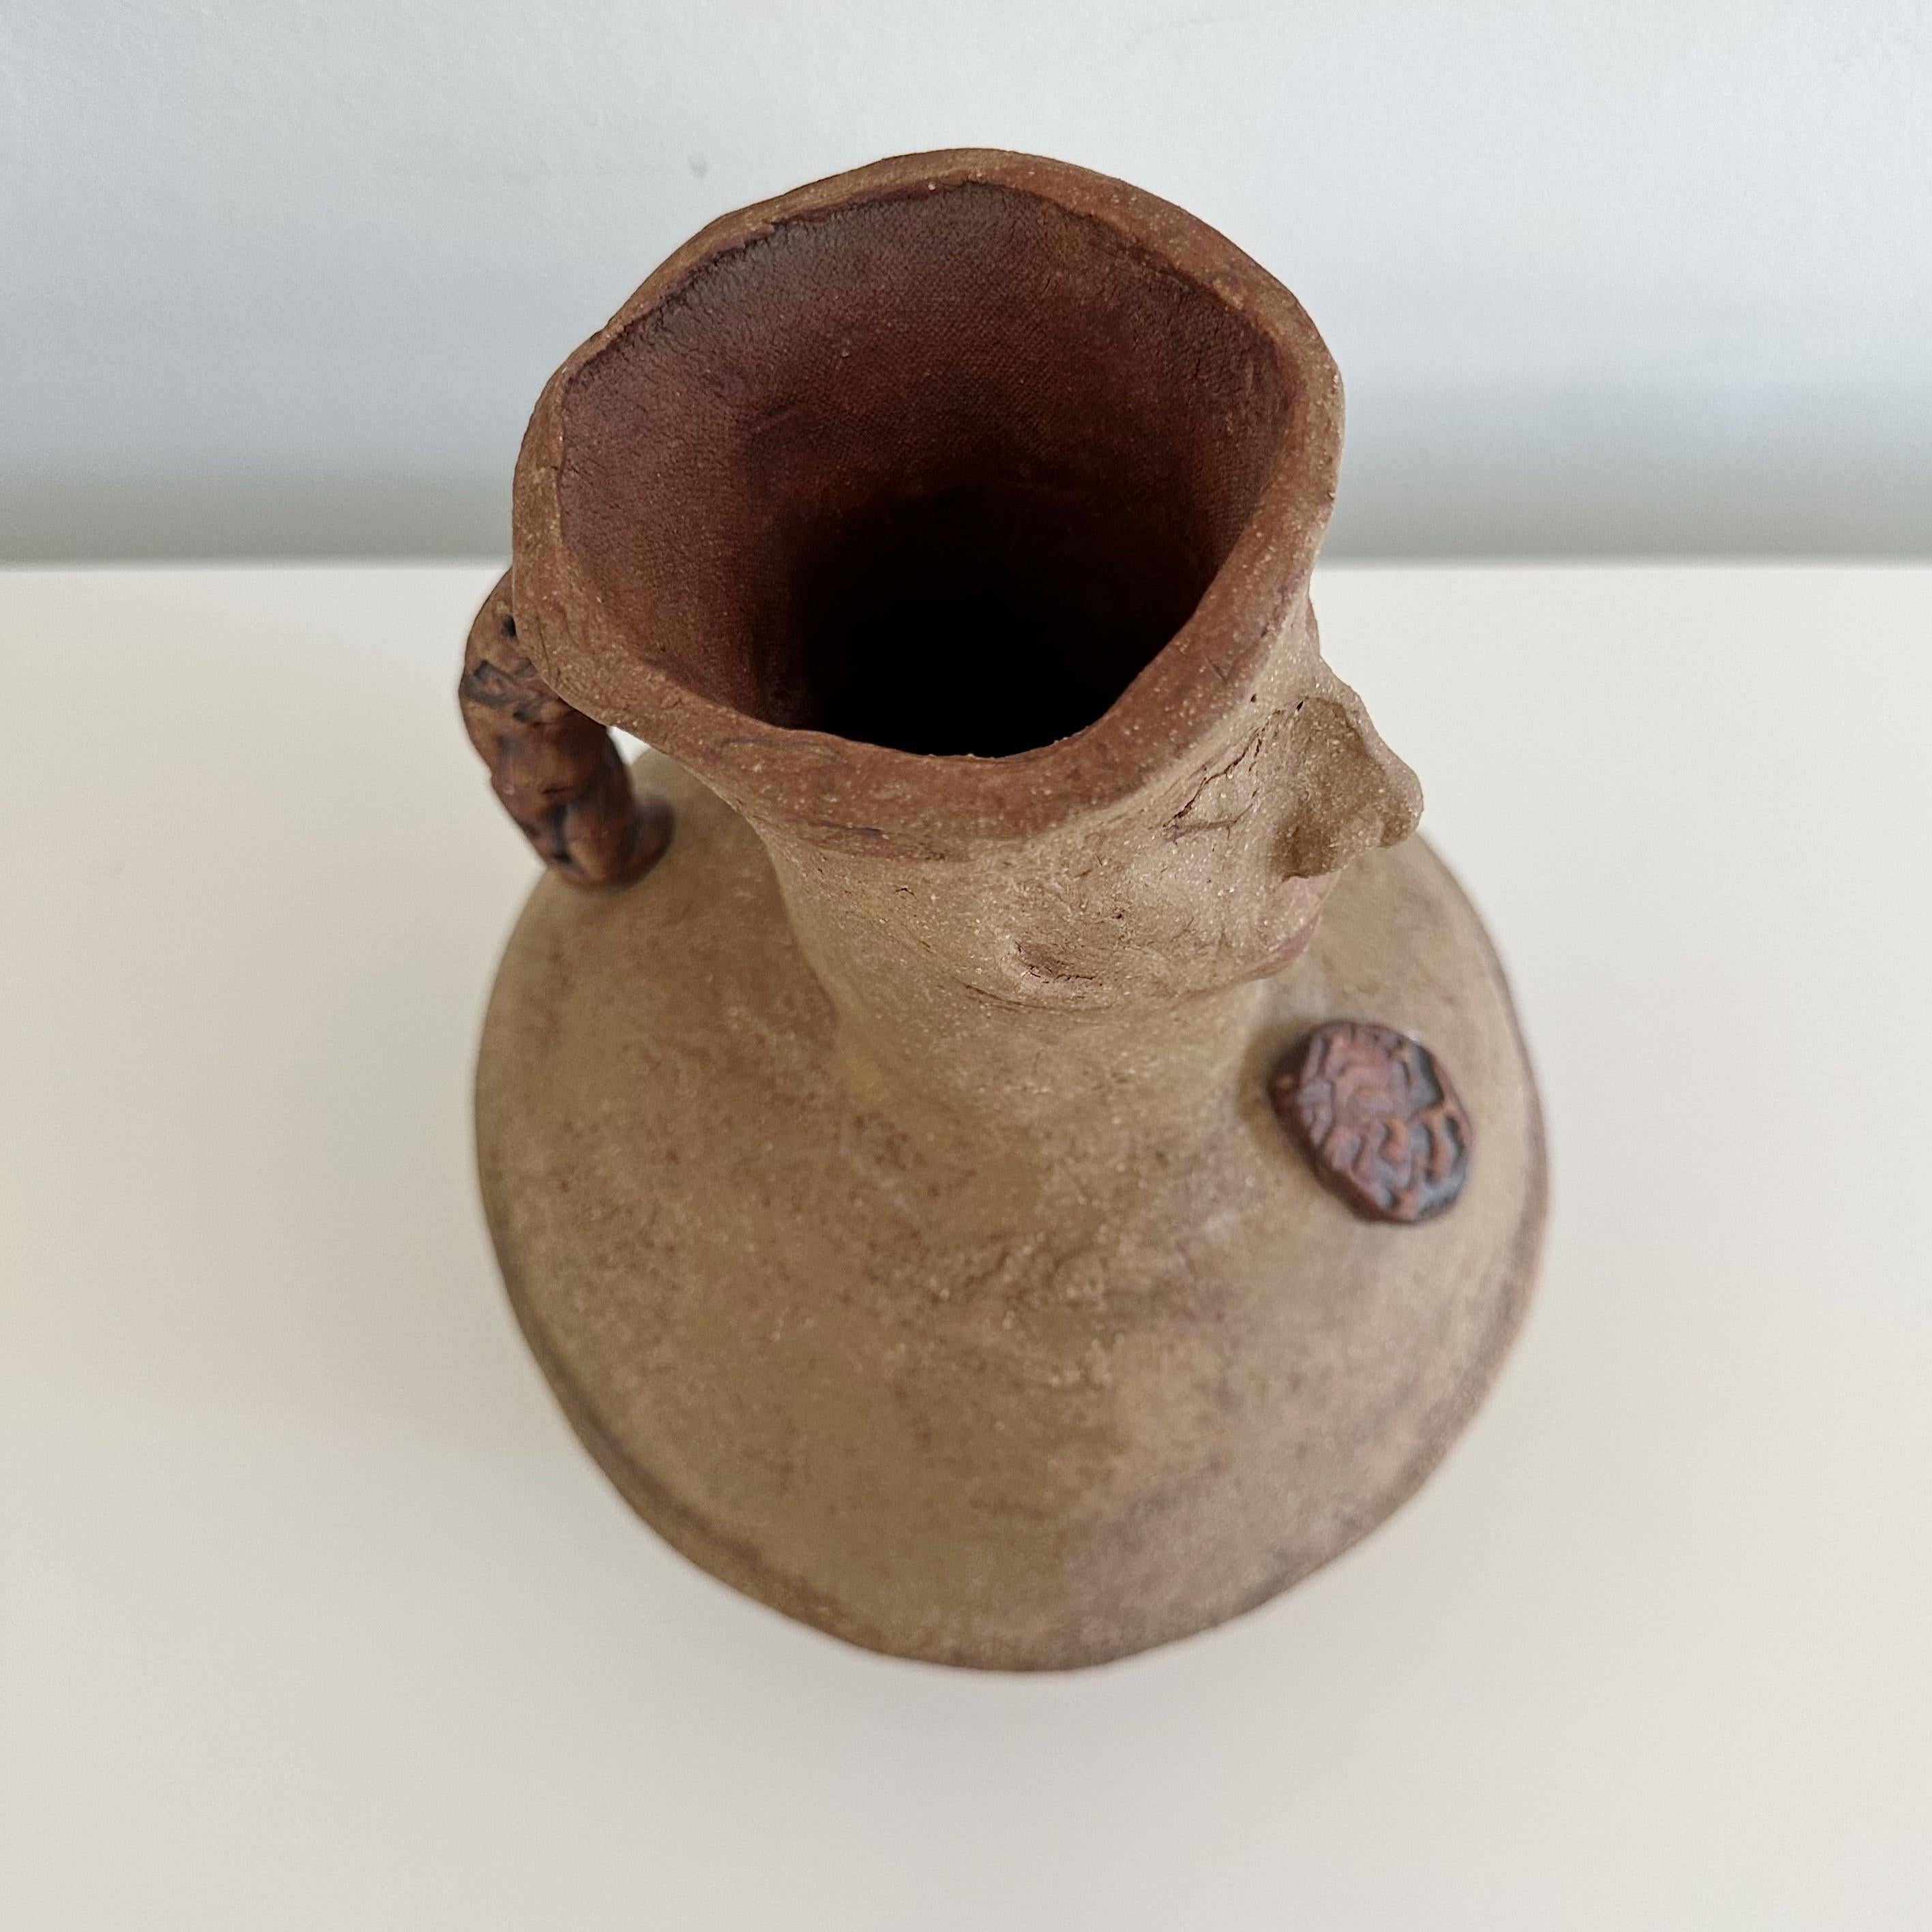 Voici une cruche, un pichet ou un vase figural unique en poterie de studio. Créée par la célèbre sculptrice Ruth Joffa. Cette pièce signée a été acquise directement auprès de la famille de l'artiste, ce qui lui confère une excellente